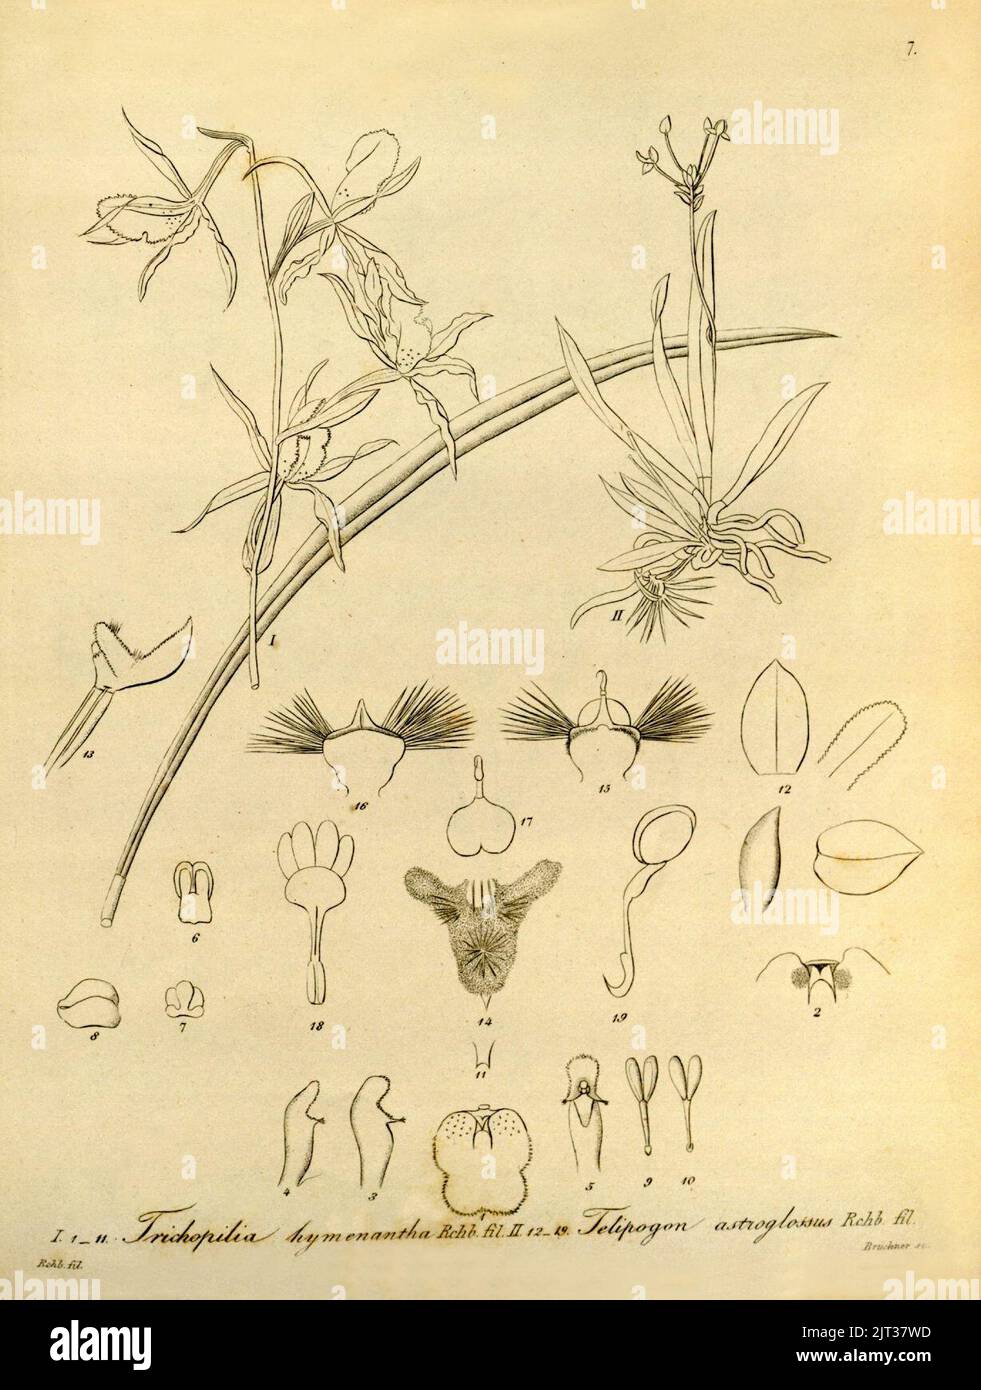 Trichopilia subulata (comme Trichopilia hymenantha) et Telipogon astroglossus - Xenia vol 1 pl 7 (1858). Banque D'Images